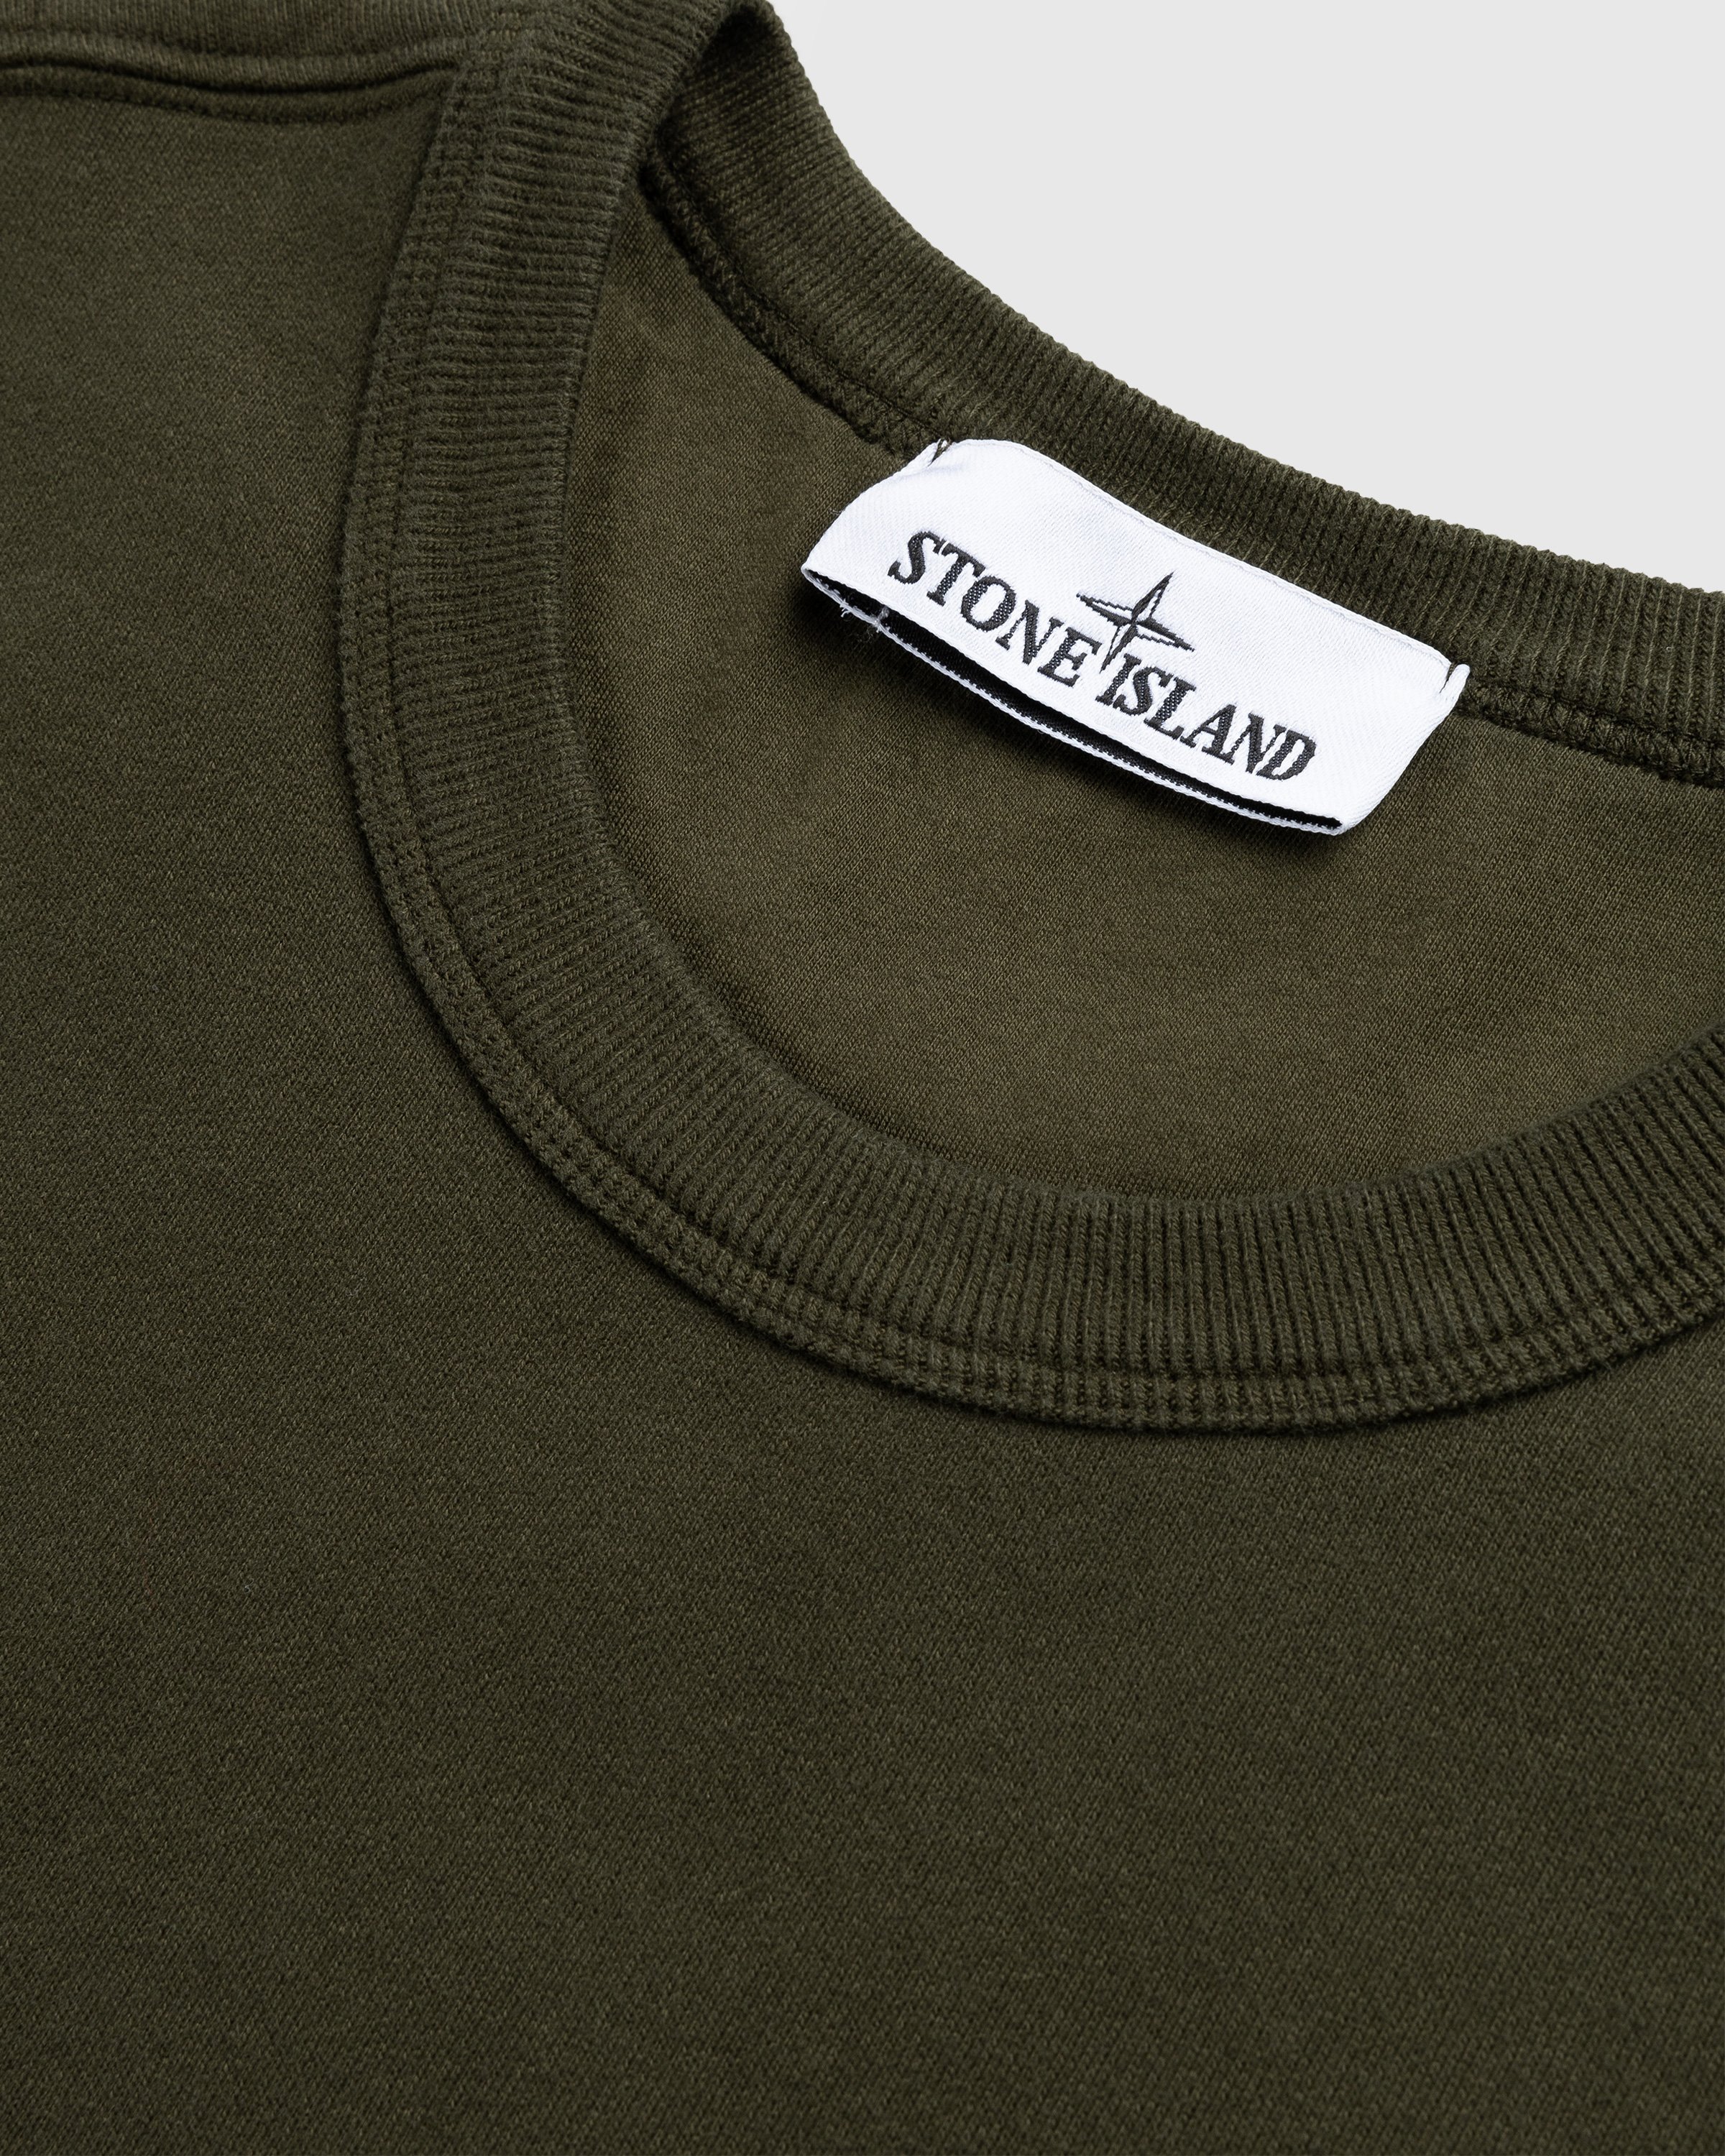 Stone Island - Garment-Dyed Brushed Fleece Crewneck Olive - Clothing - Green - Image 5